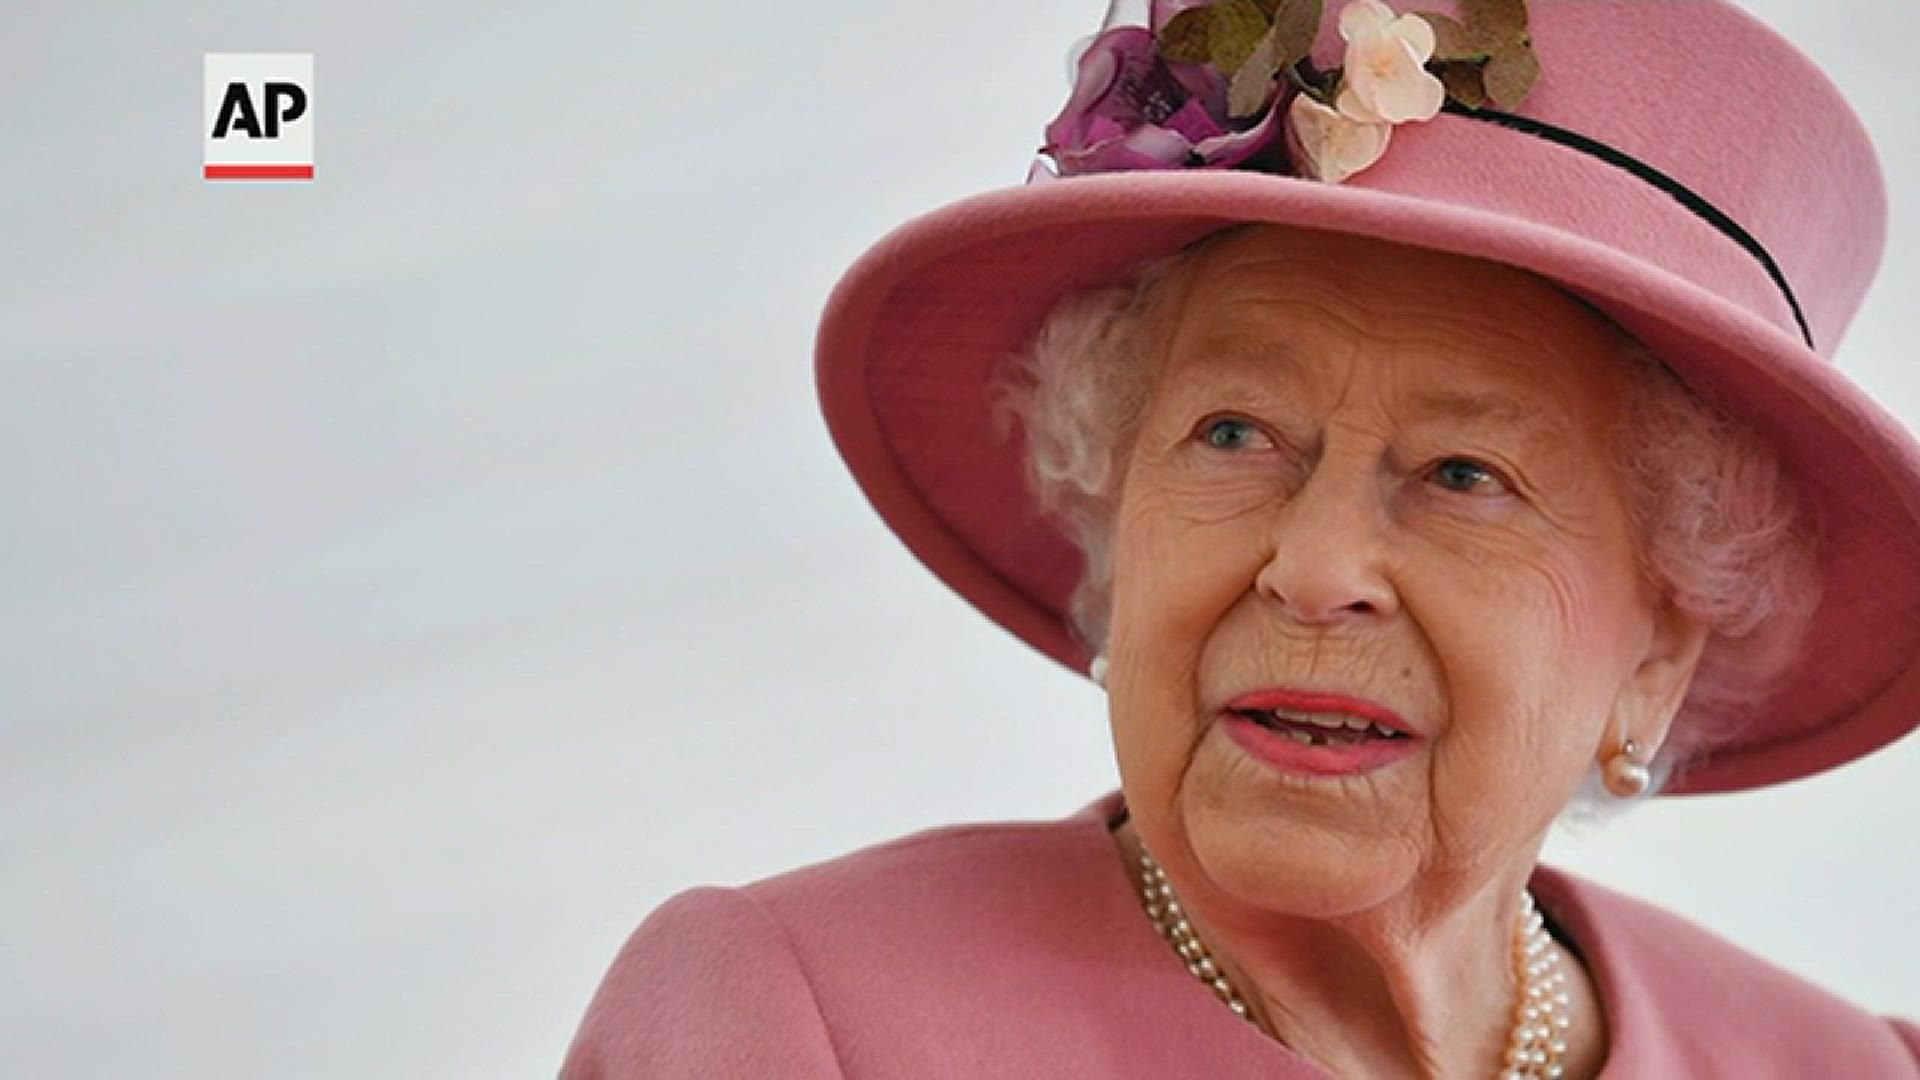 When did Queen Elizabeth II visit Sacramento?